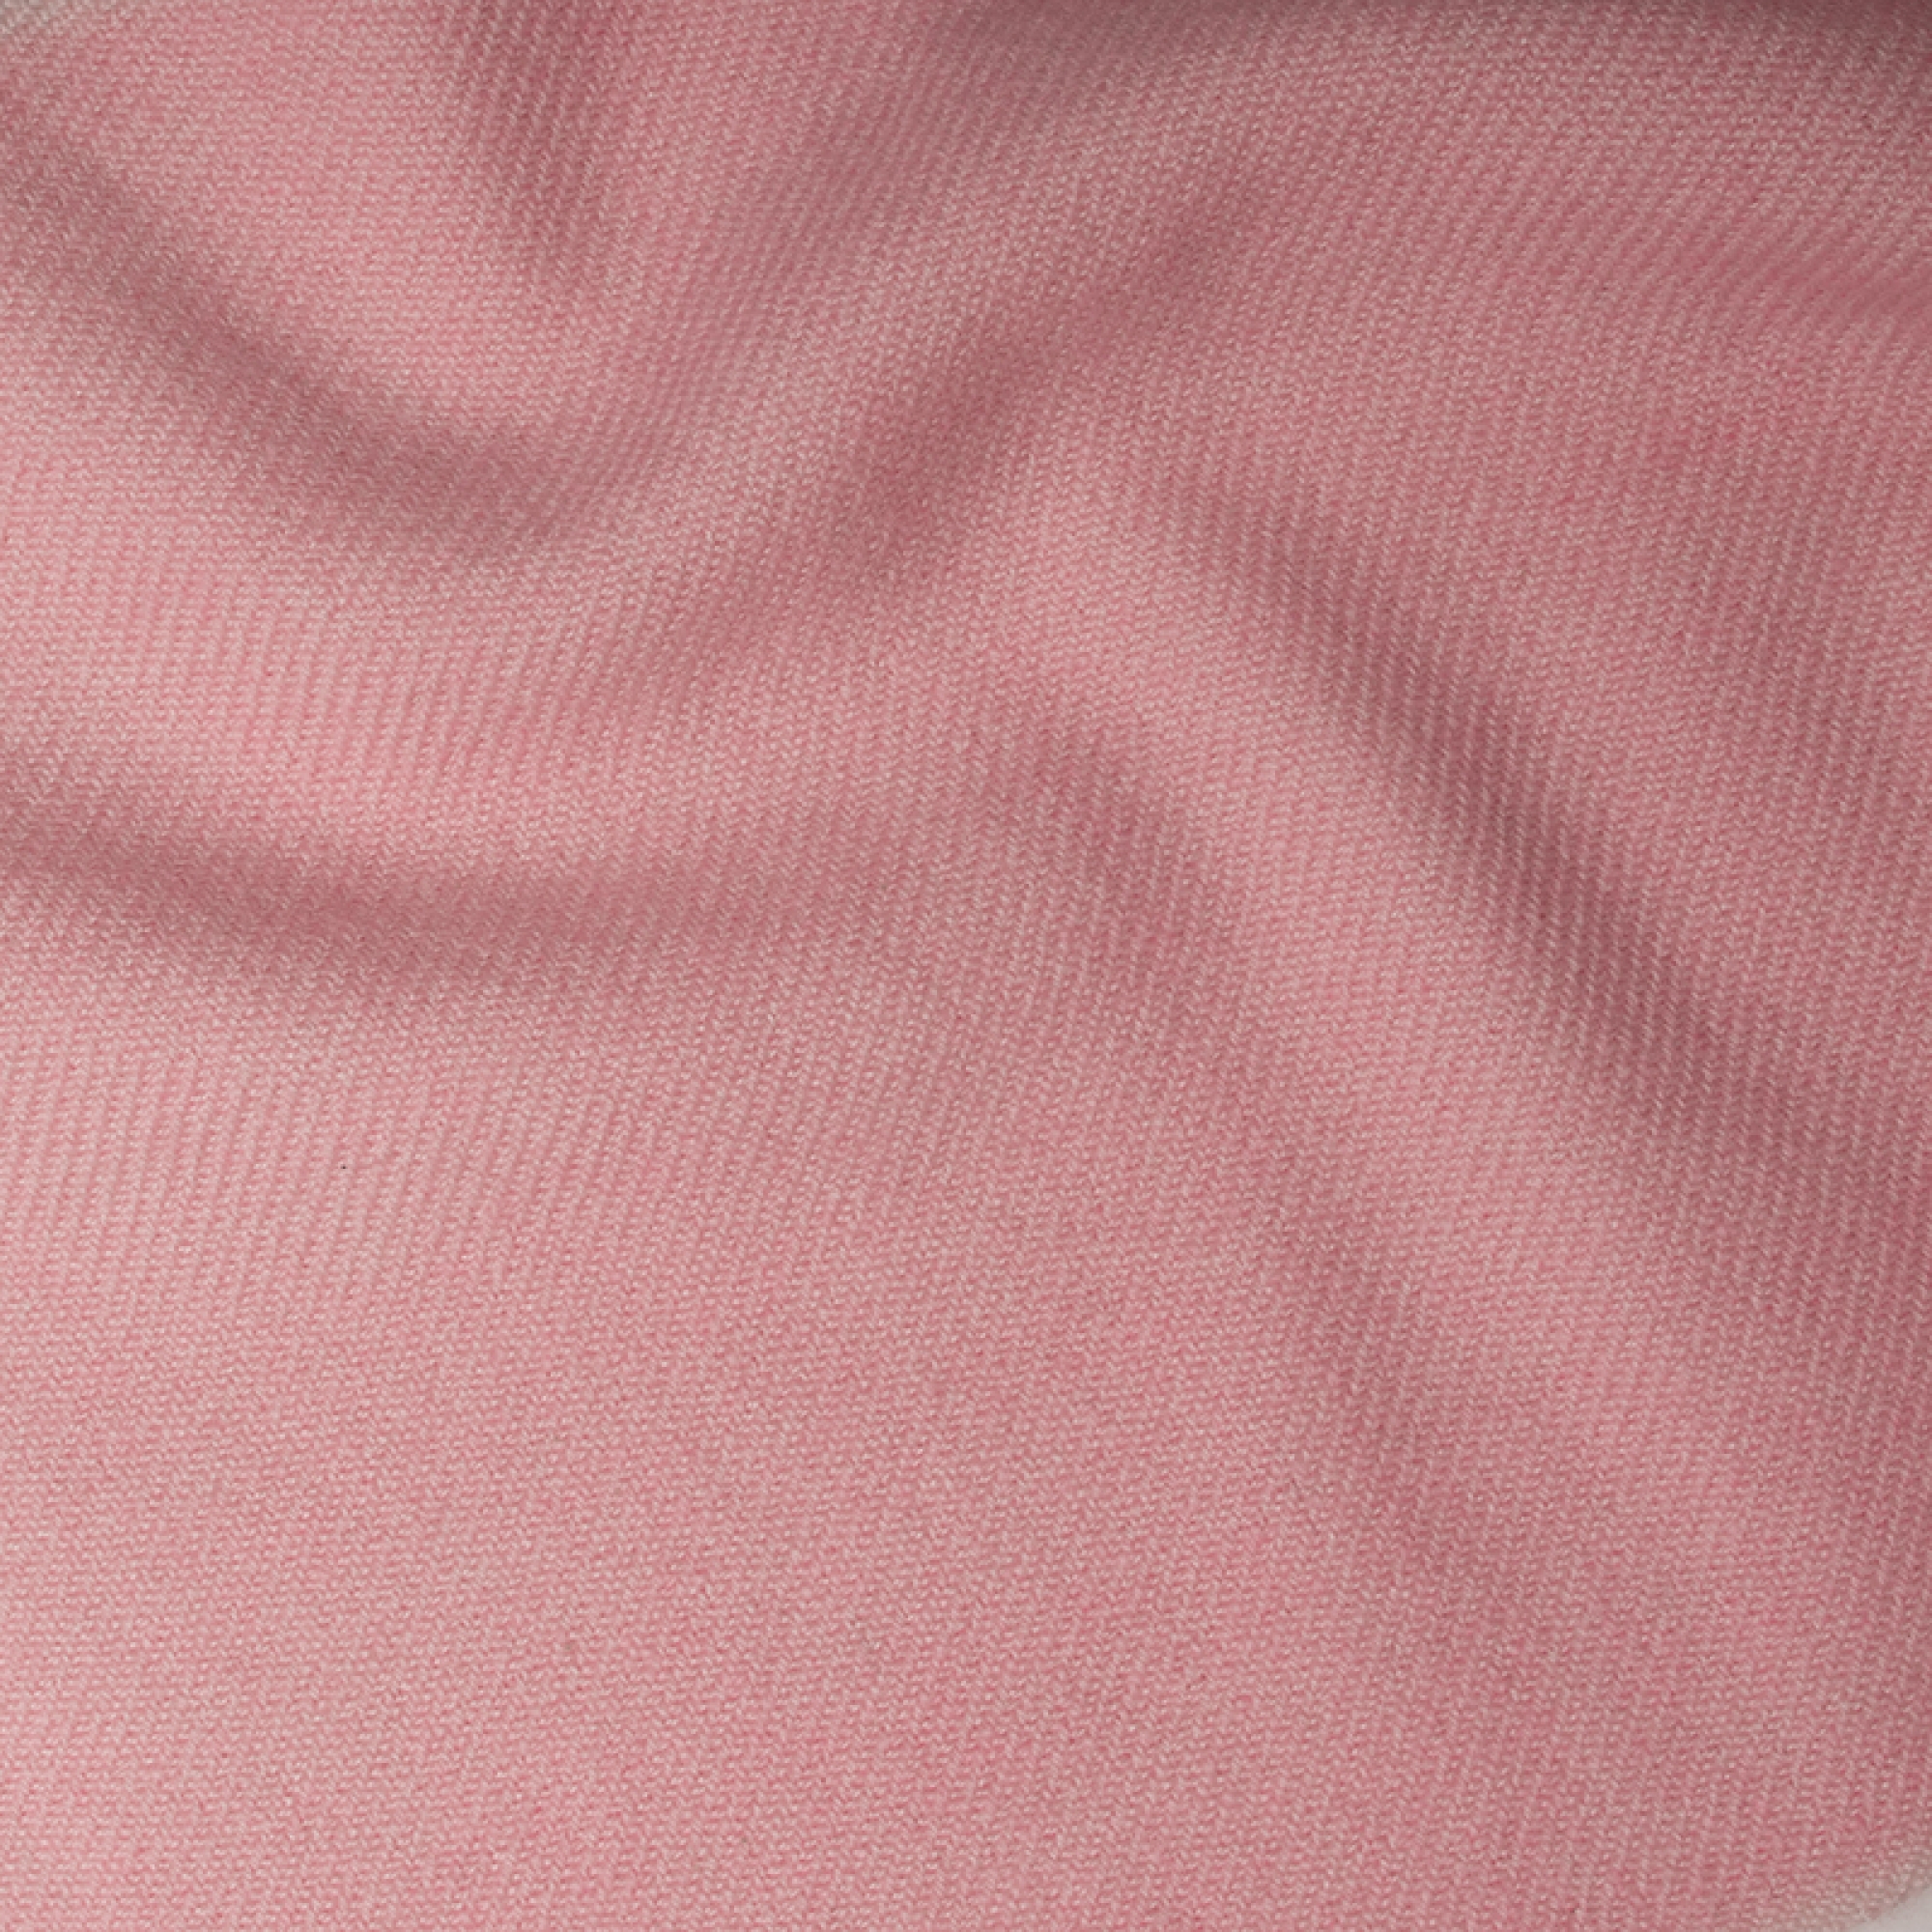 Cachemire accessoires couvertures plaids toodoo plain m 180 x 220 rose dragee 180 x 220 cm